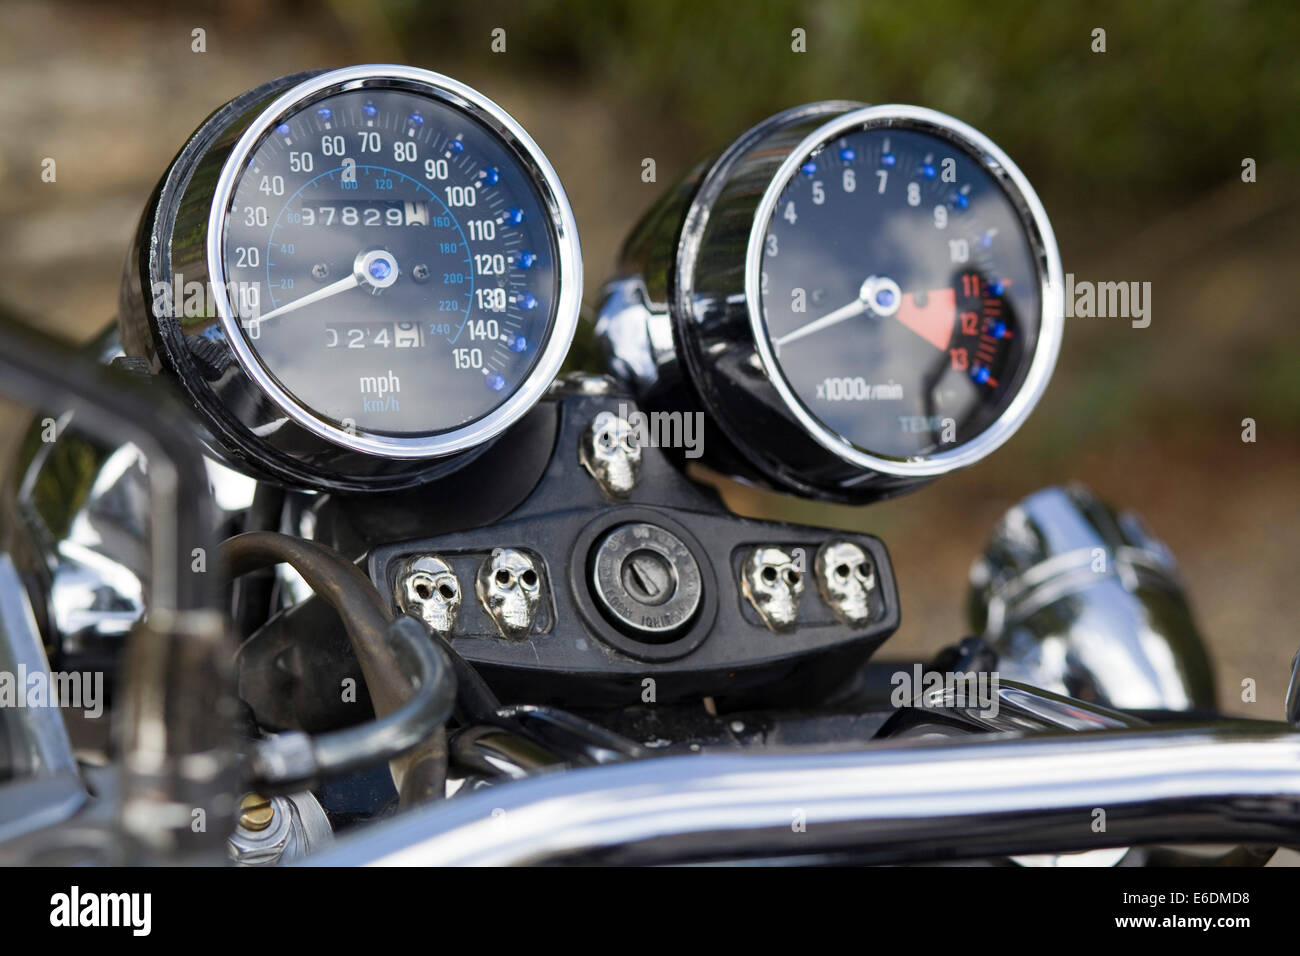 Motorrad Instrumente Tacho und Drehzahlmesser Stockfotografie - Alamy